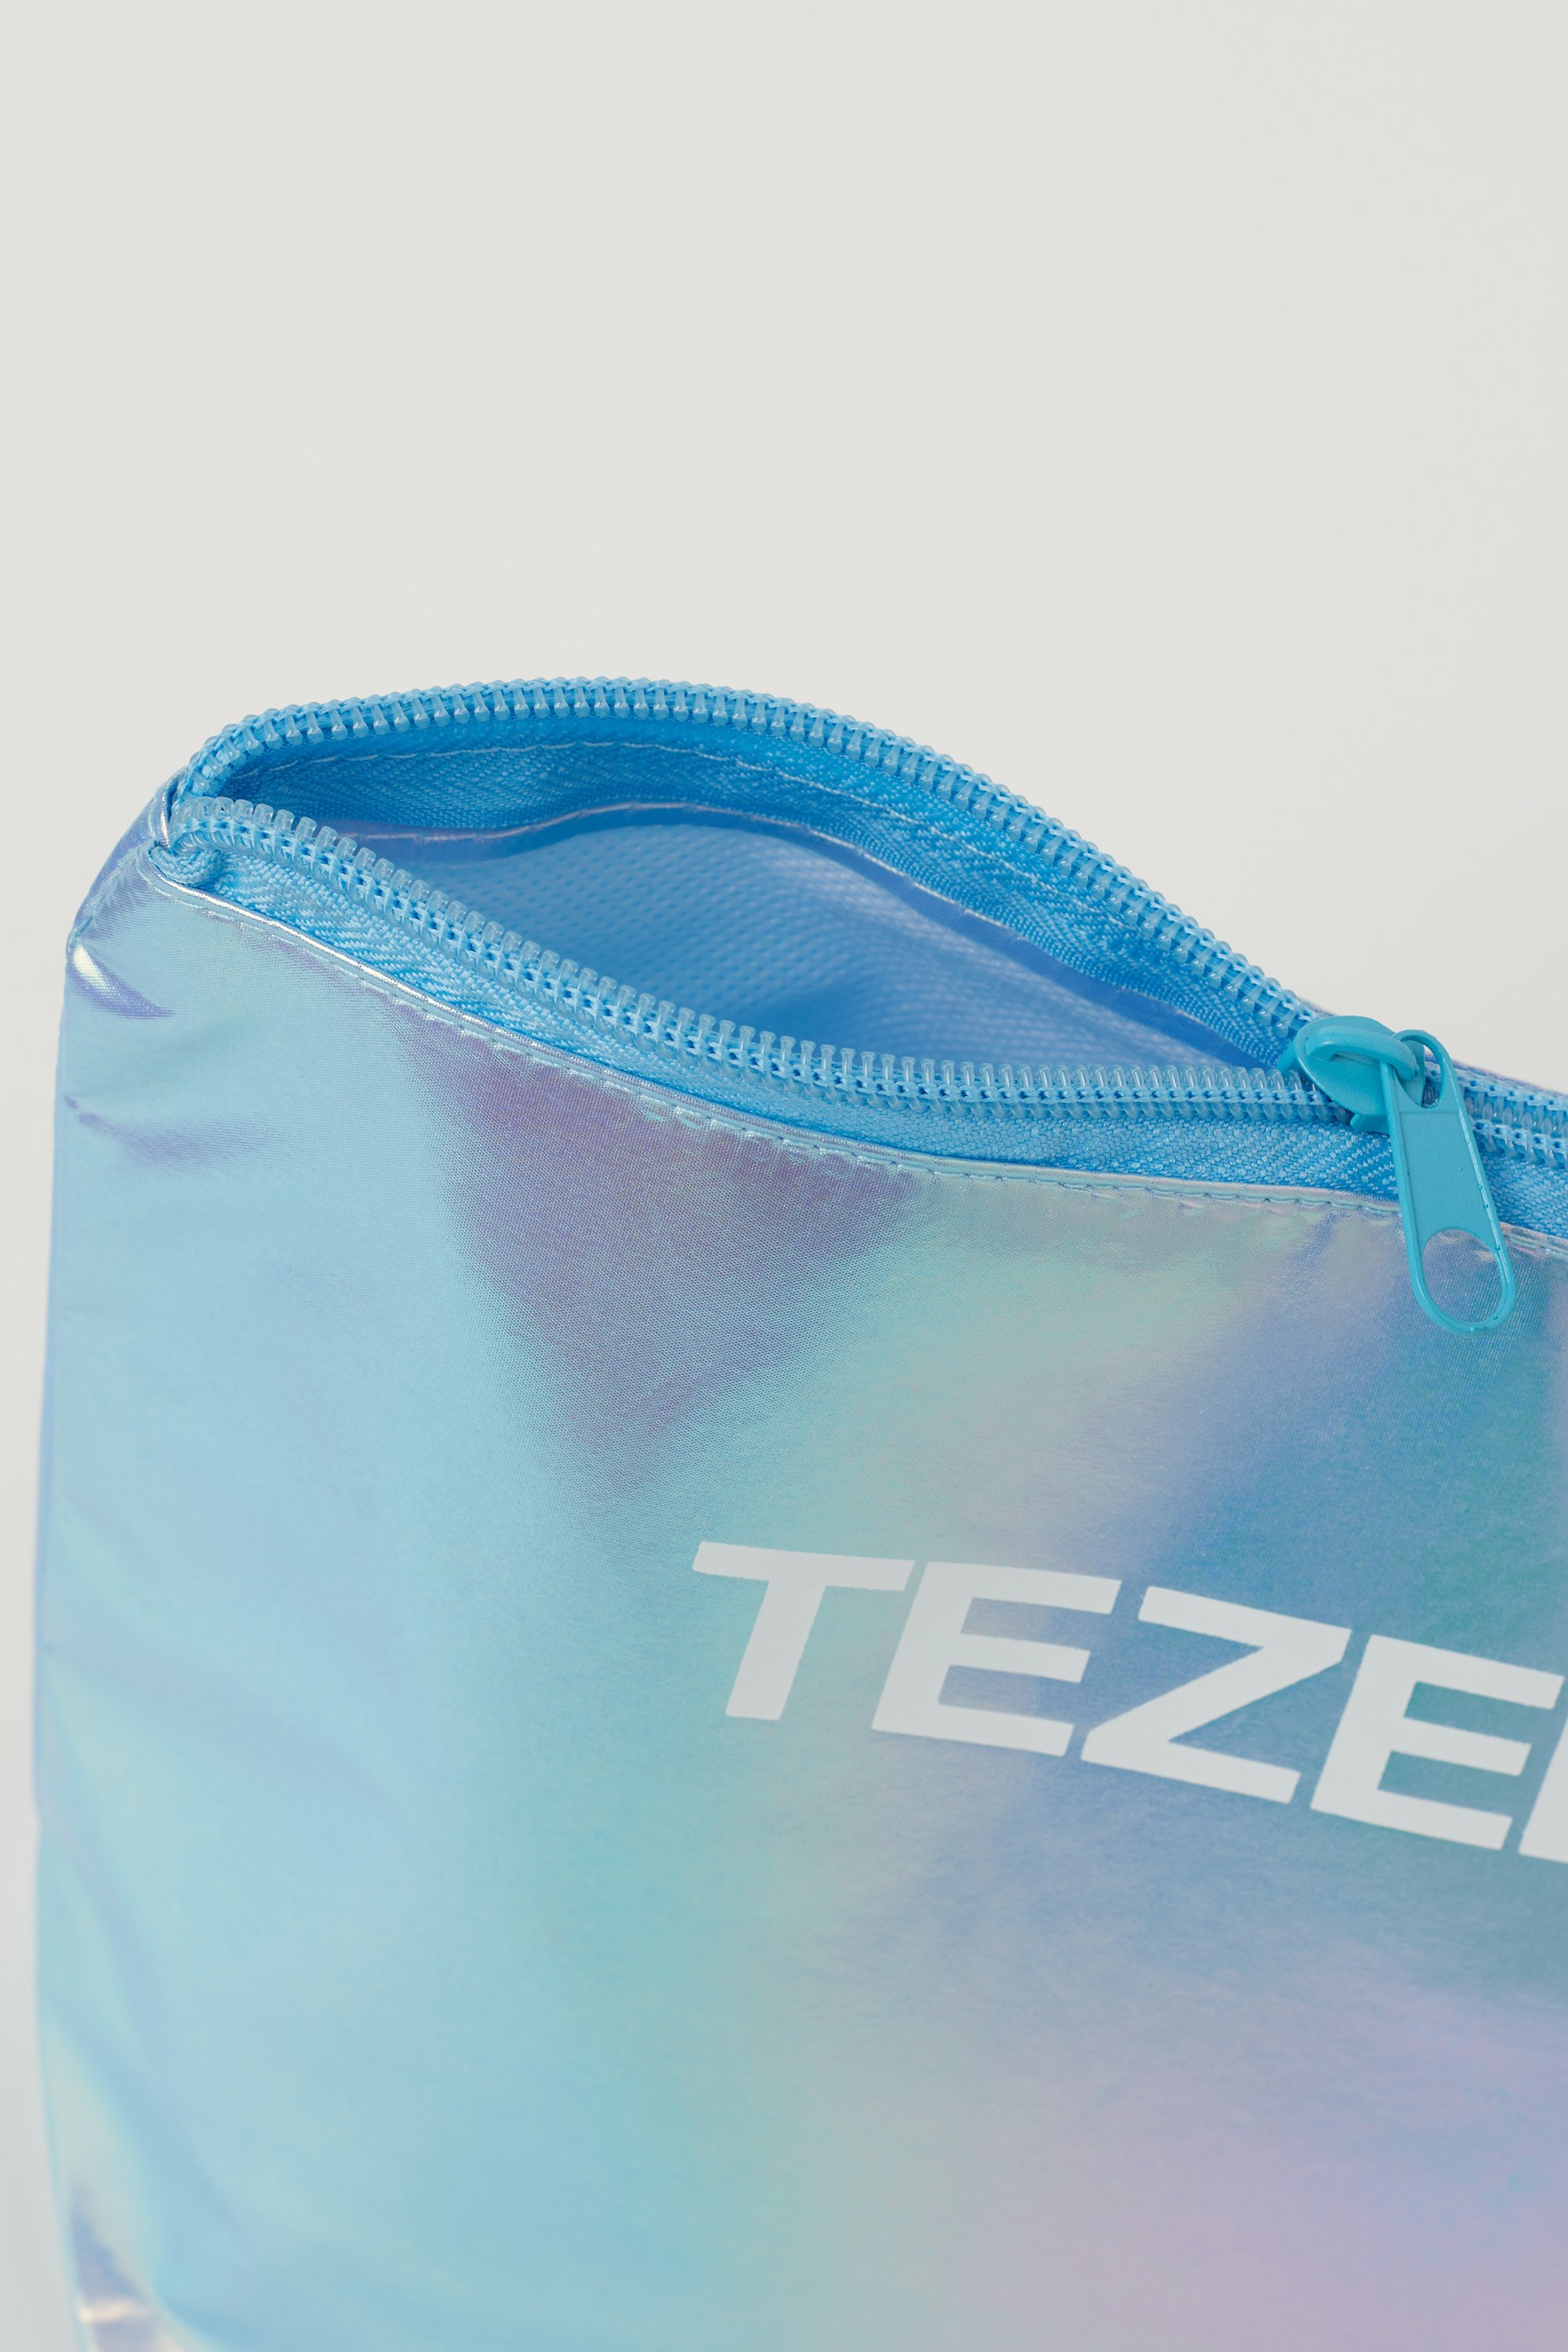 Tσάντα θαλάσσης με Zip από Ανακυκλωμένο Πλαστικό